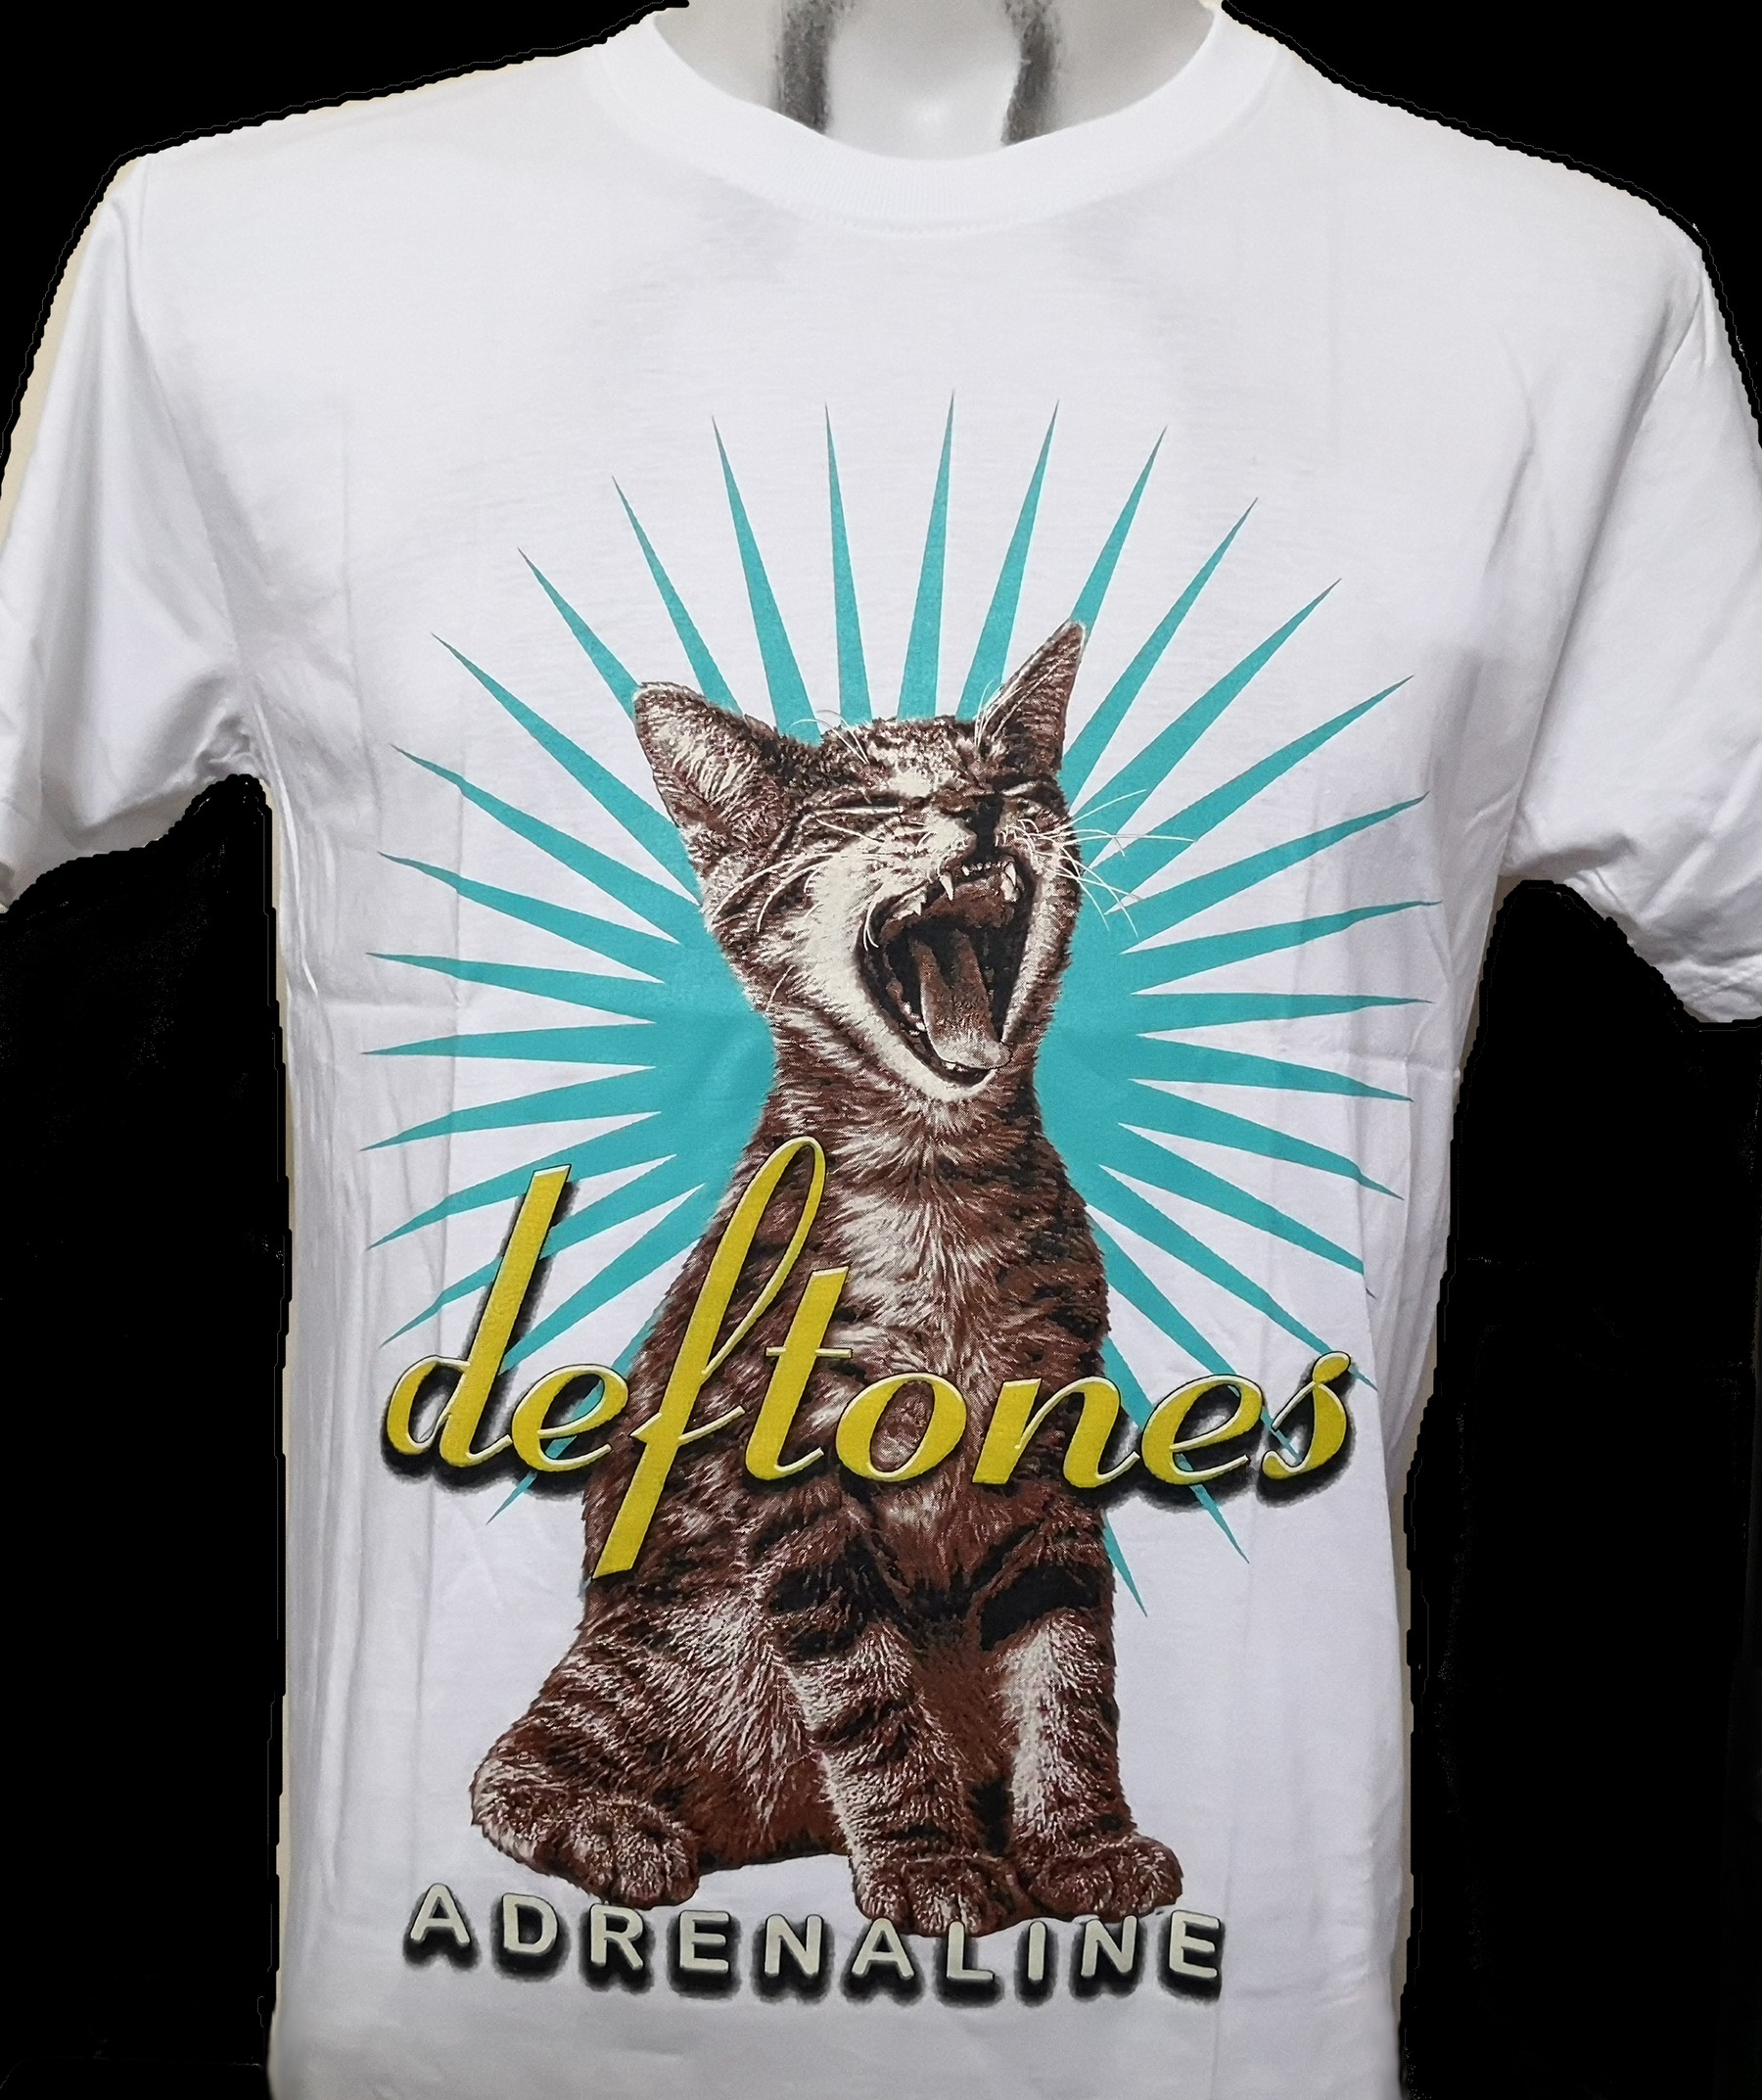 Deftones t-shirt Adrenaline size M